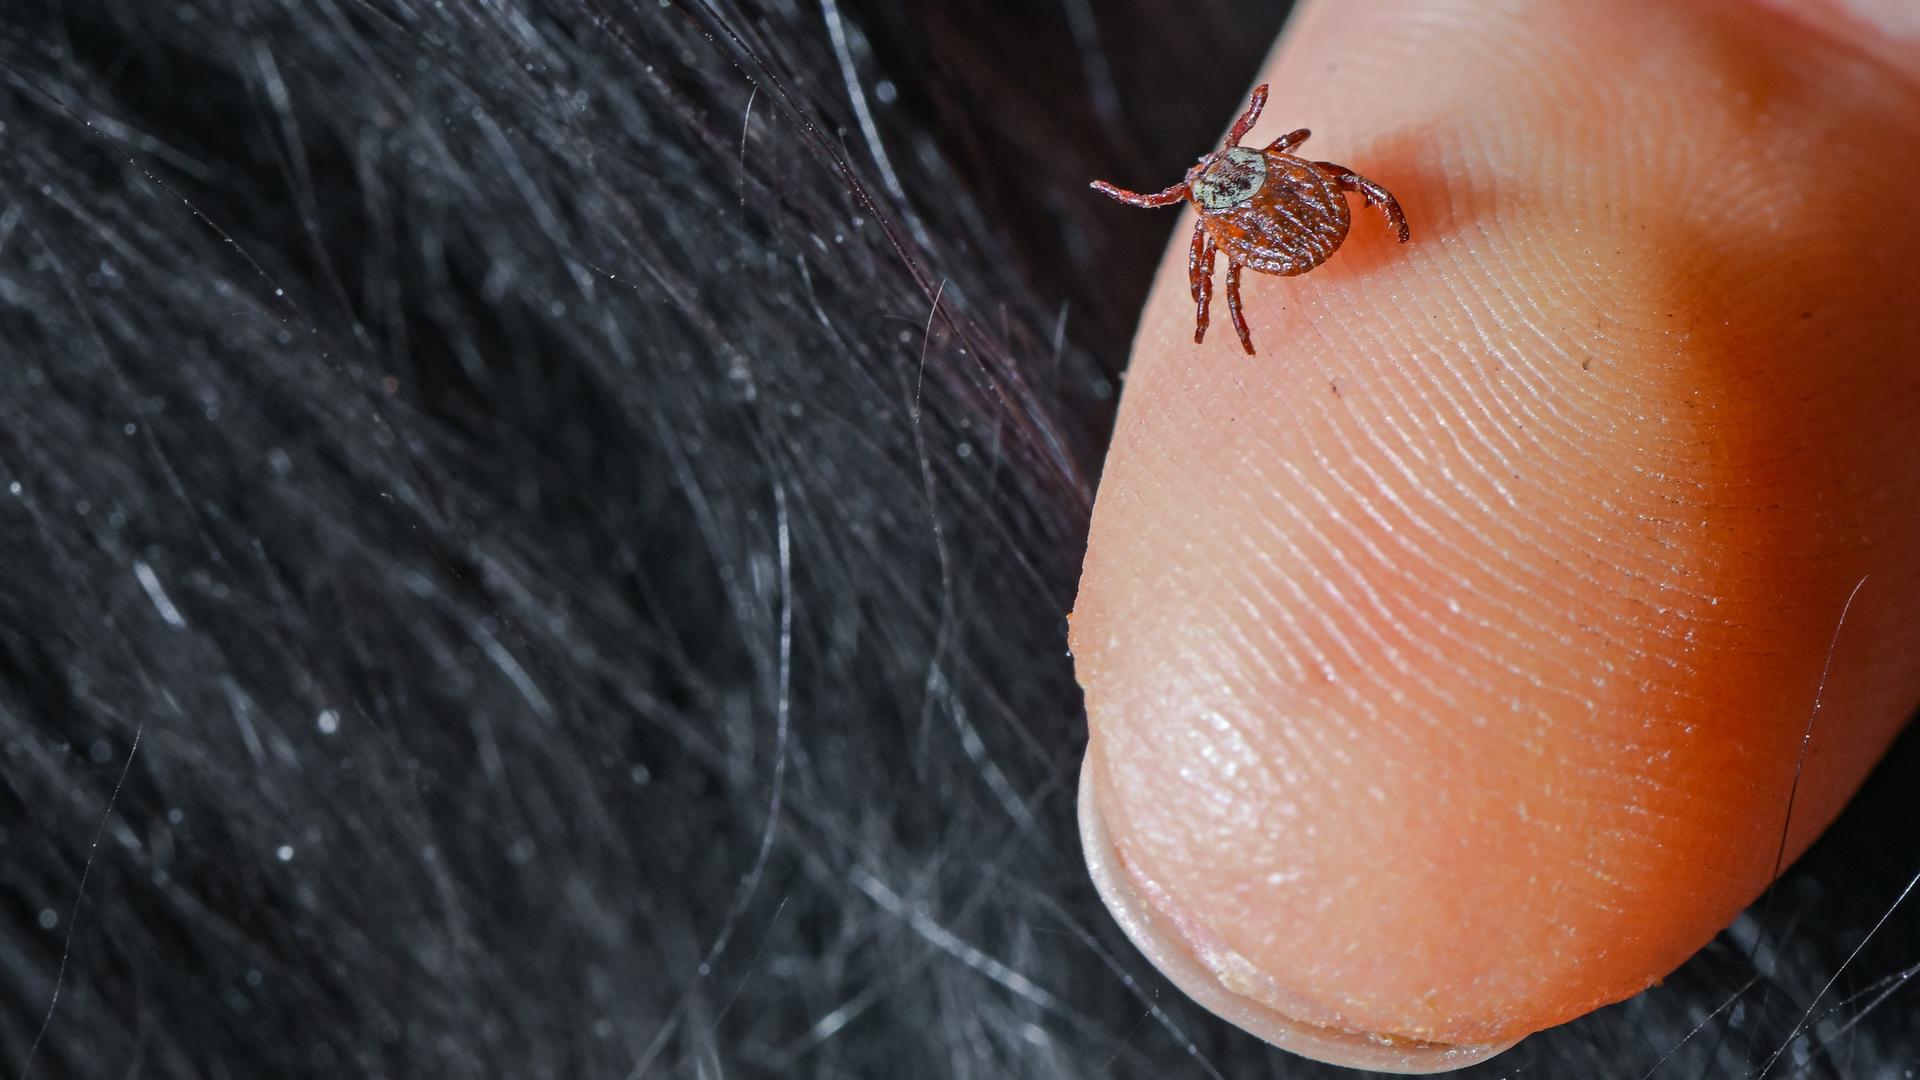 Eine Zecke (Ixodida) ist auf einem Finger zu sehen, nachdem diese vom Fell eines Hundes abgesammelt wurde.